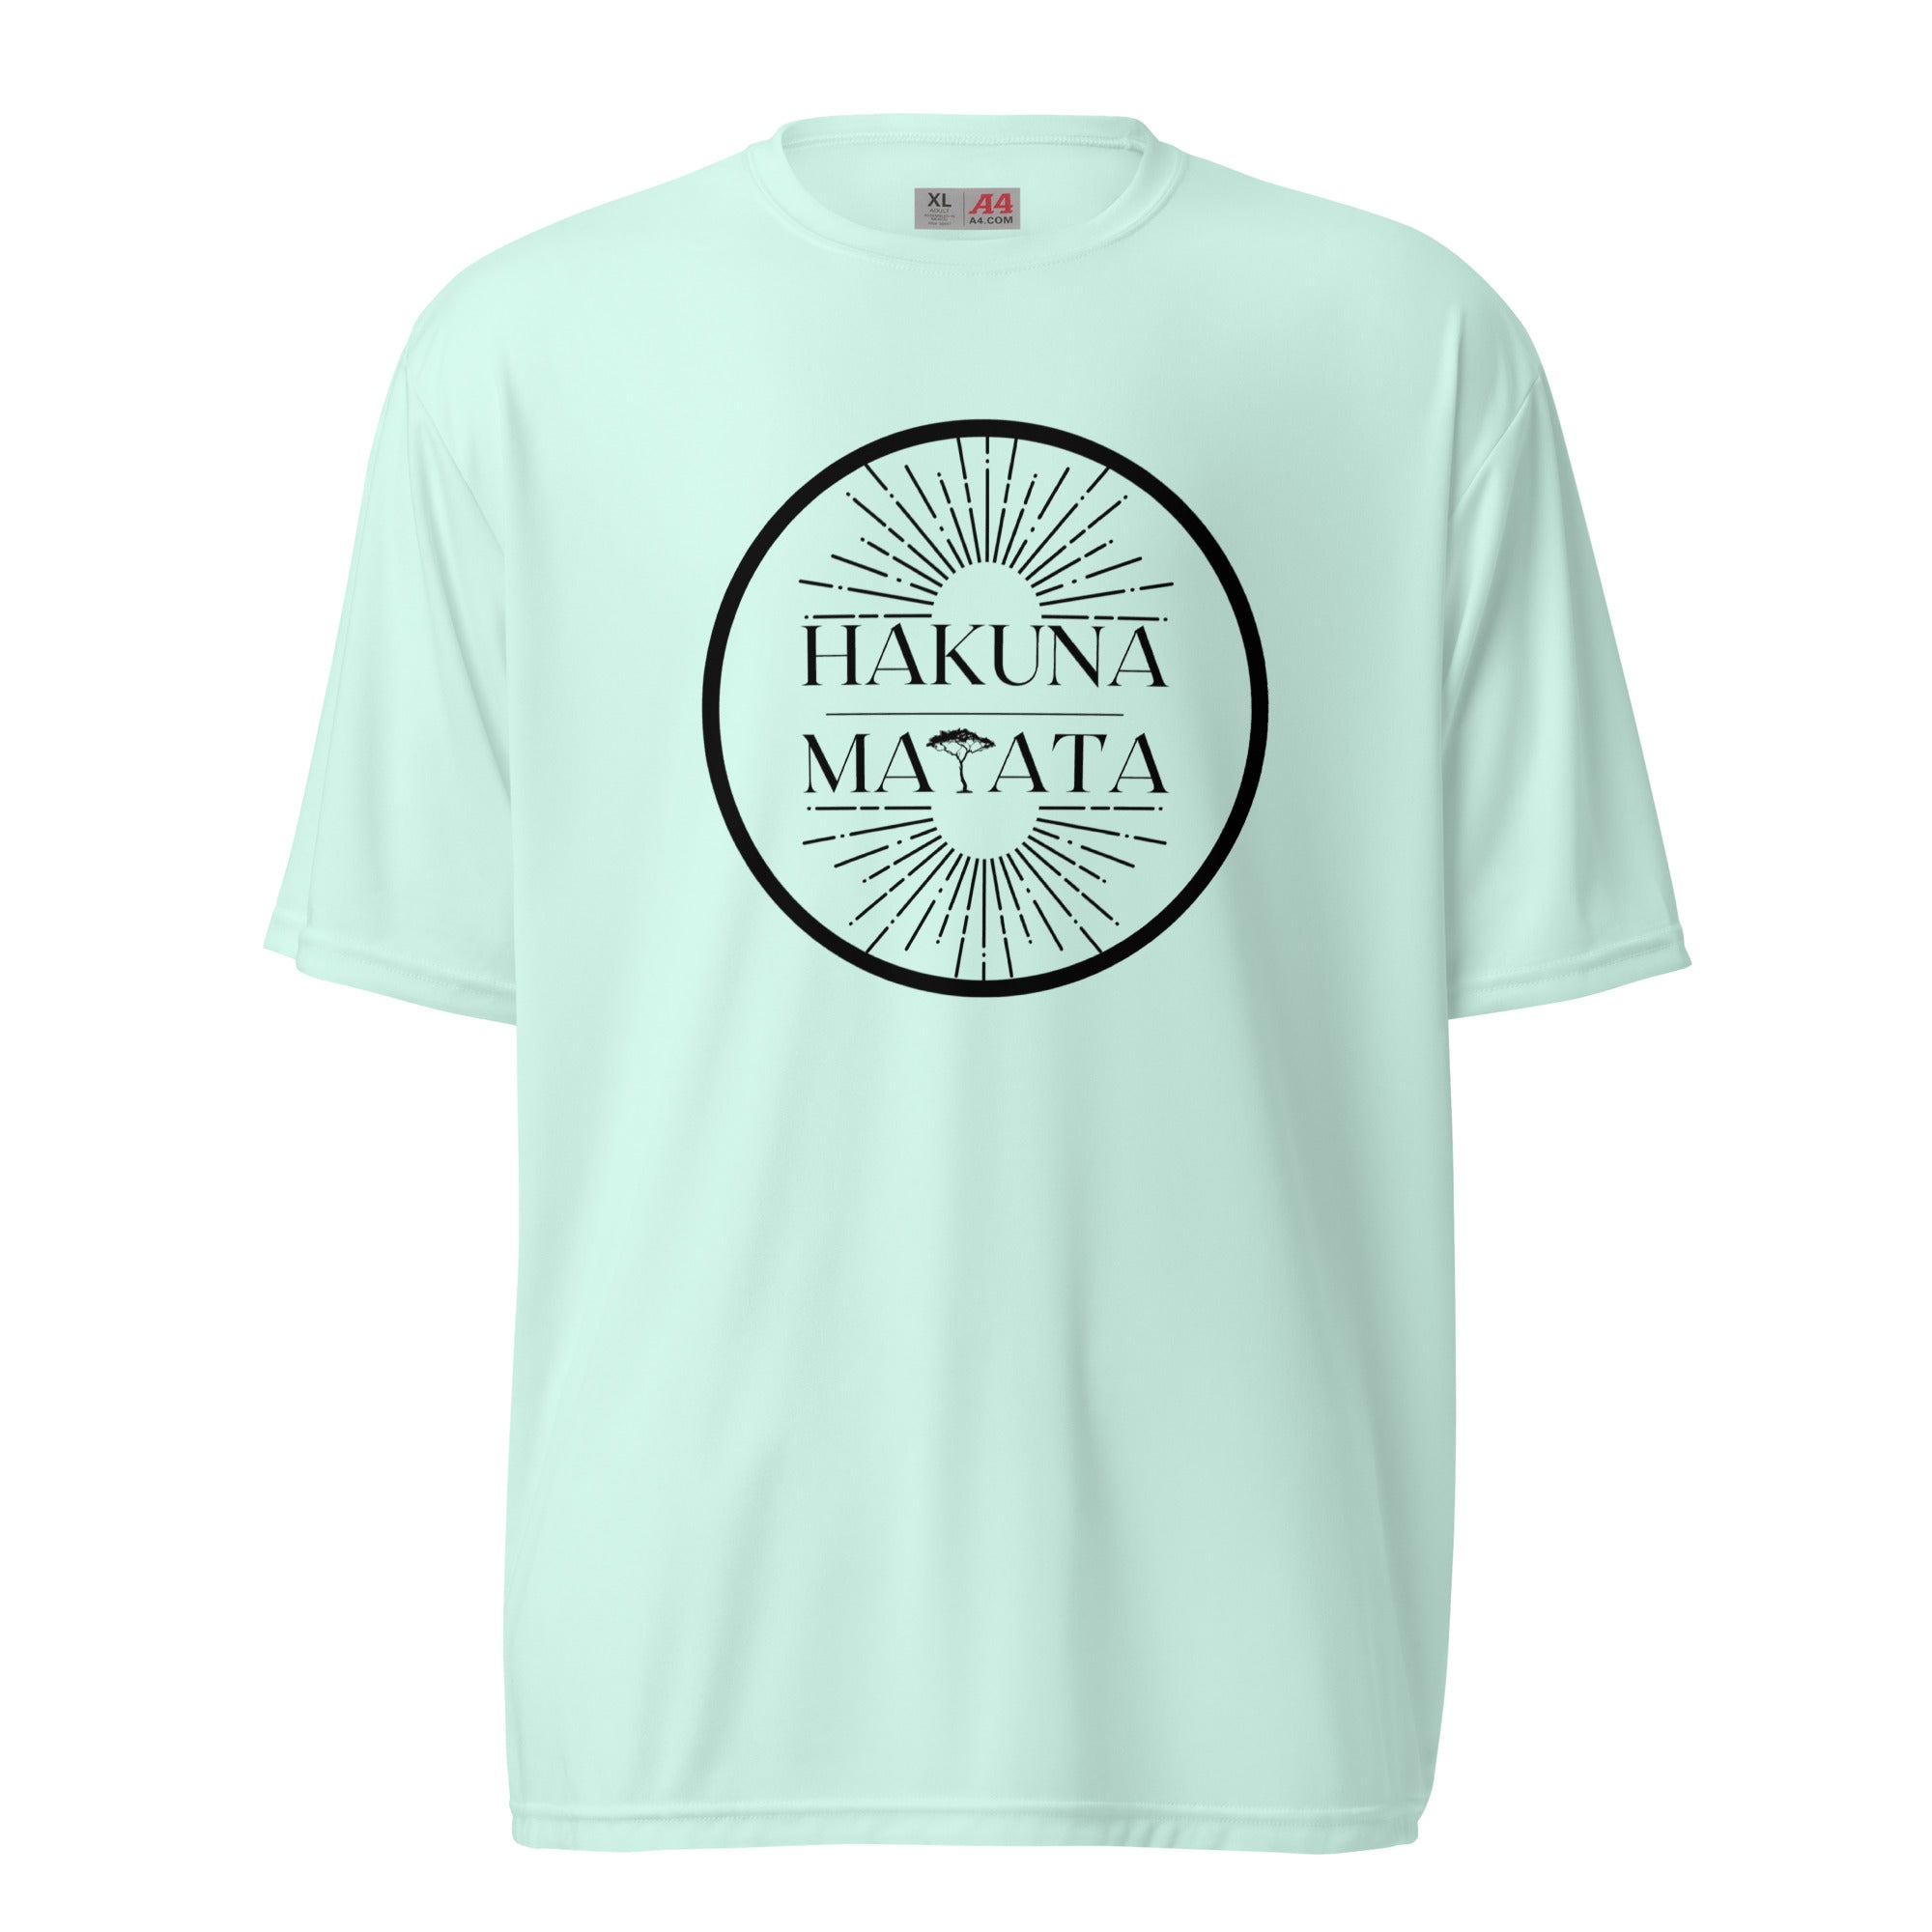 Hakuna Matata Athletic Moisture-Wicking Shirt - unisex